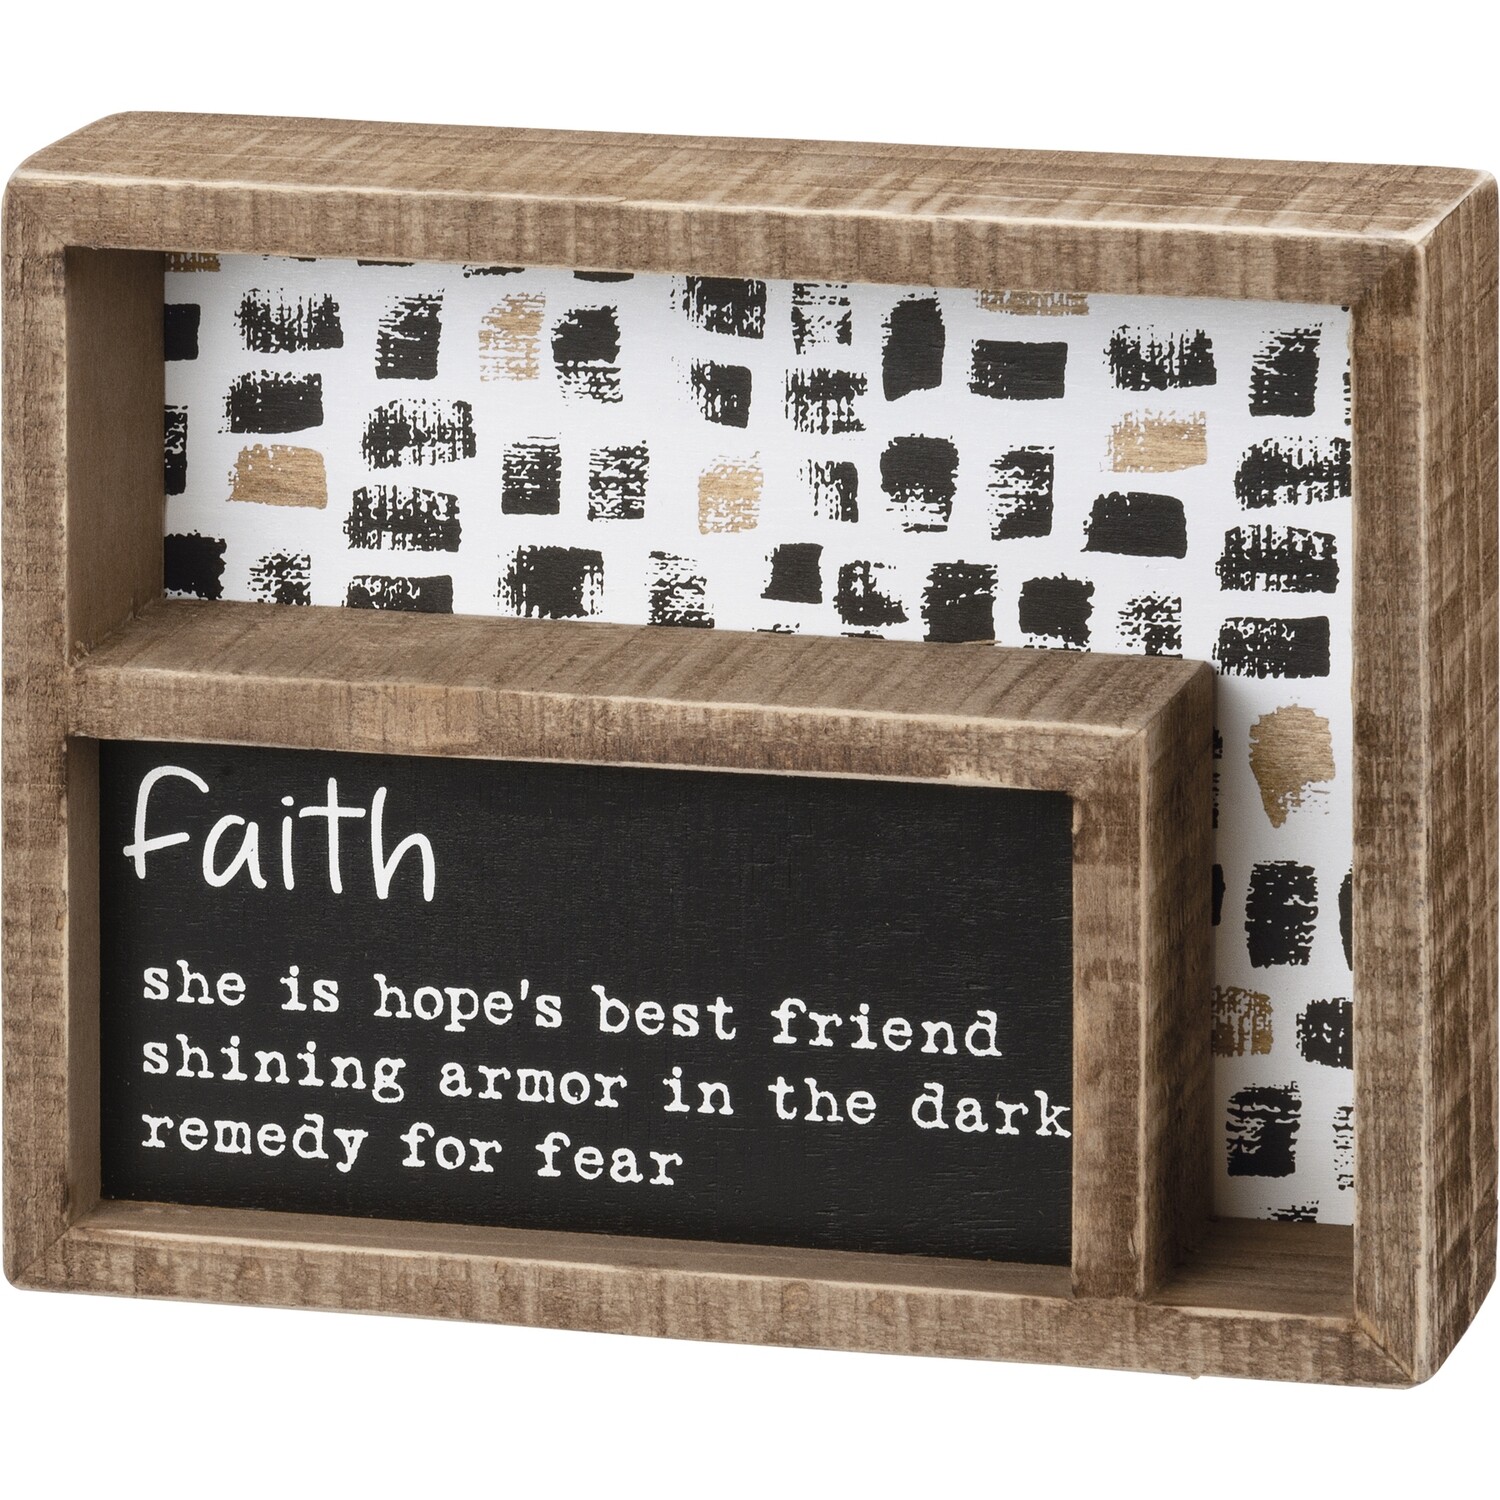 Faith Inset Box Sign